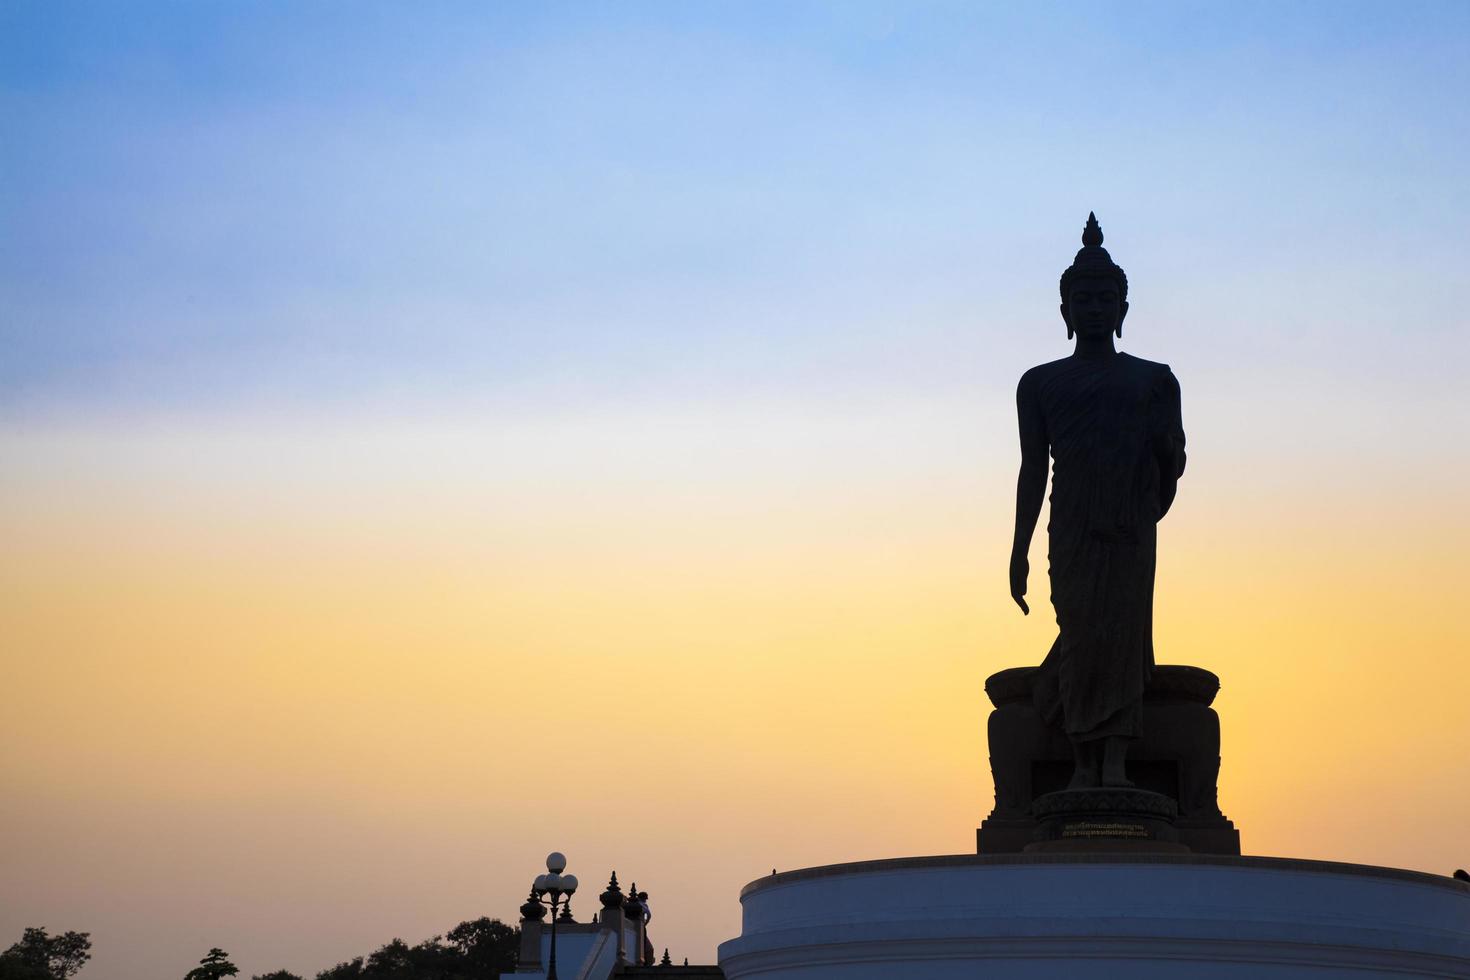 Big Buddha at sunset photo